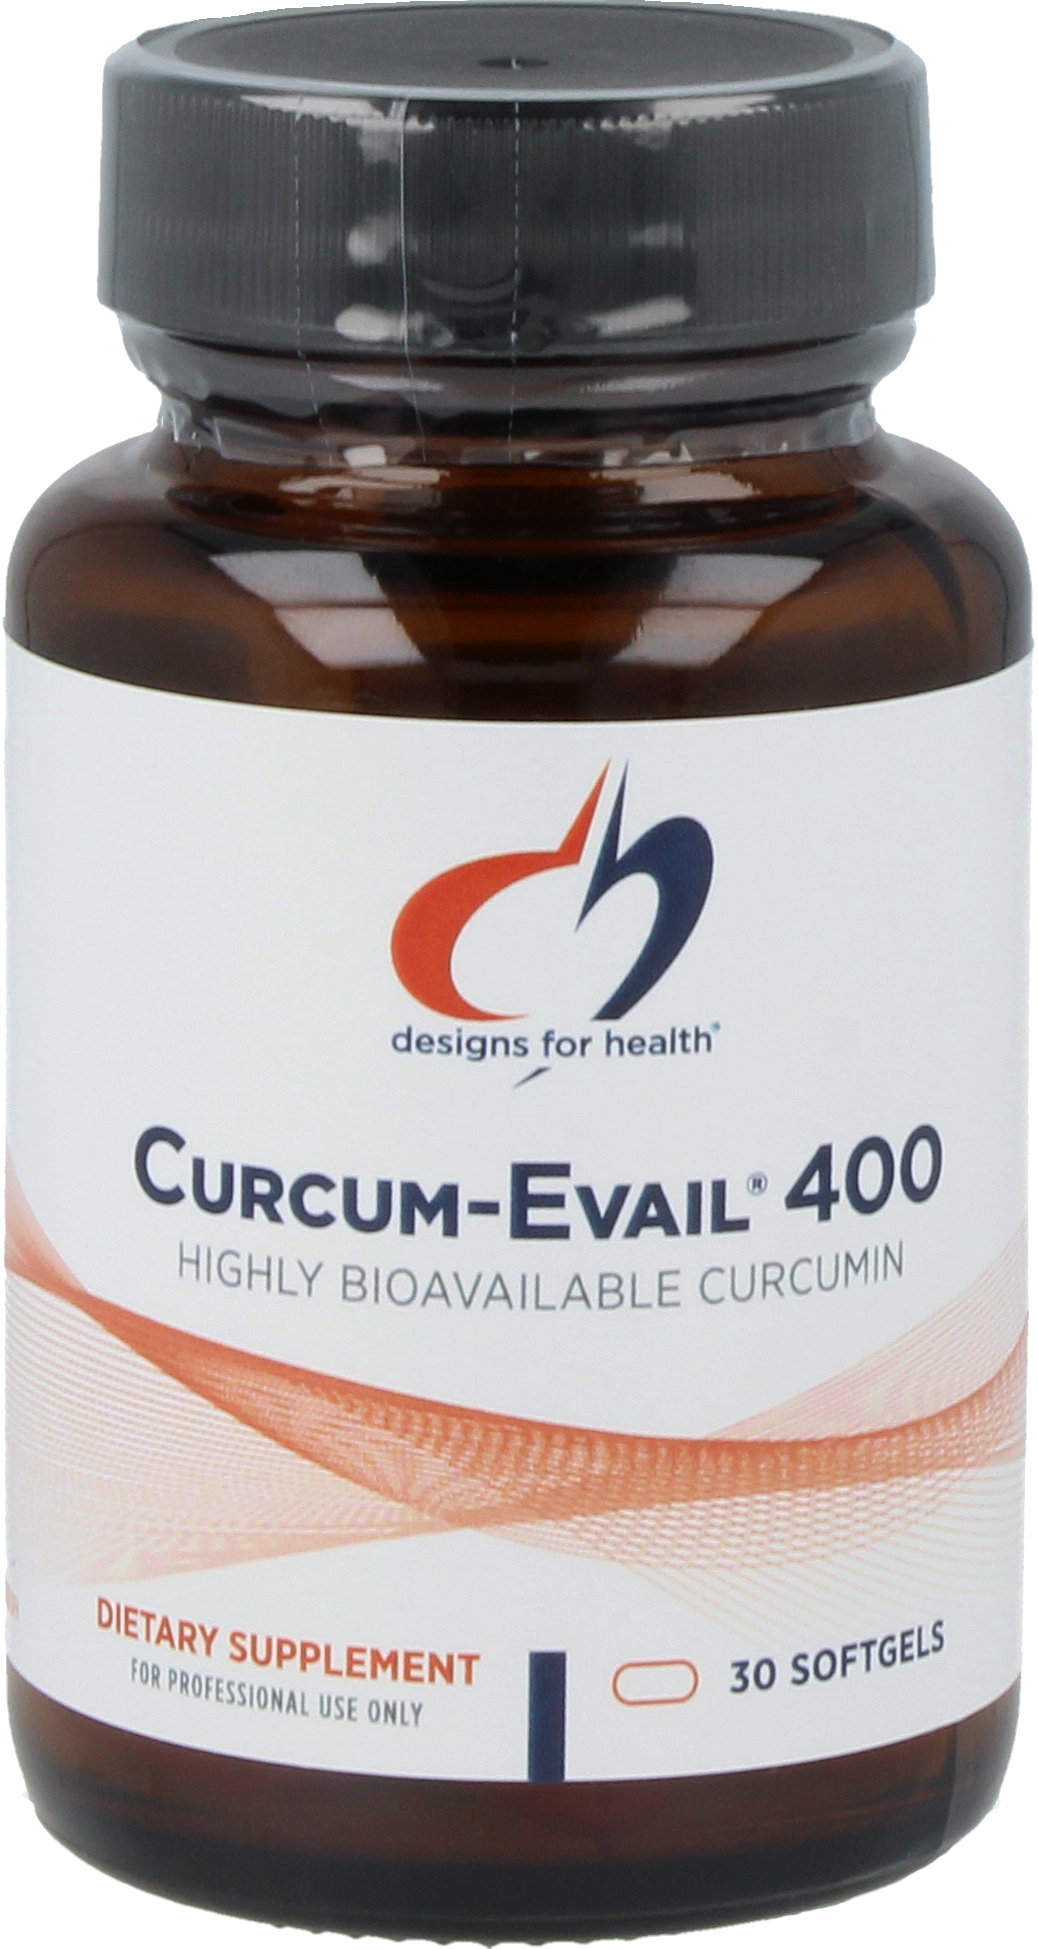 Curcum-Evail® 